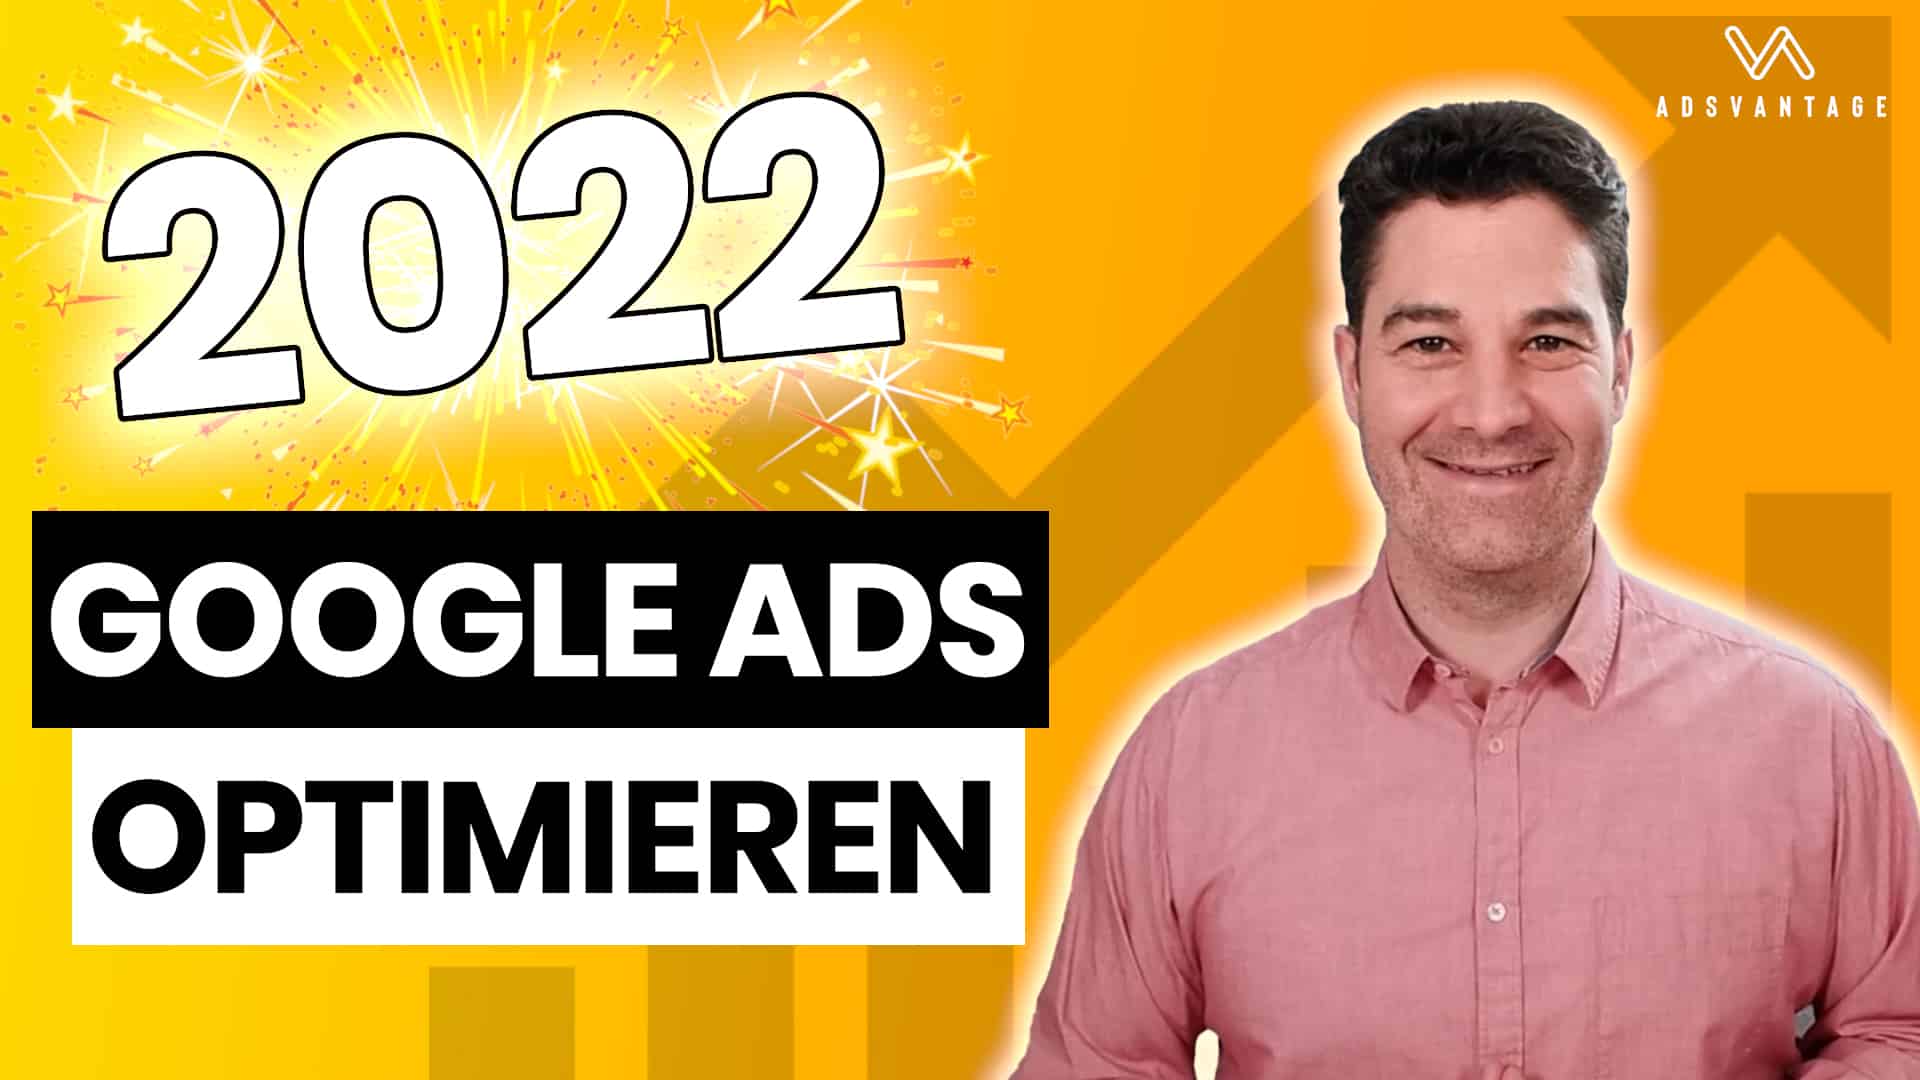 Google Ads optimieren 2022: Die wichtigsten Punkte